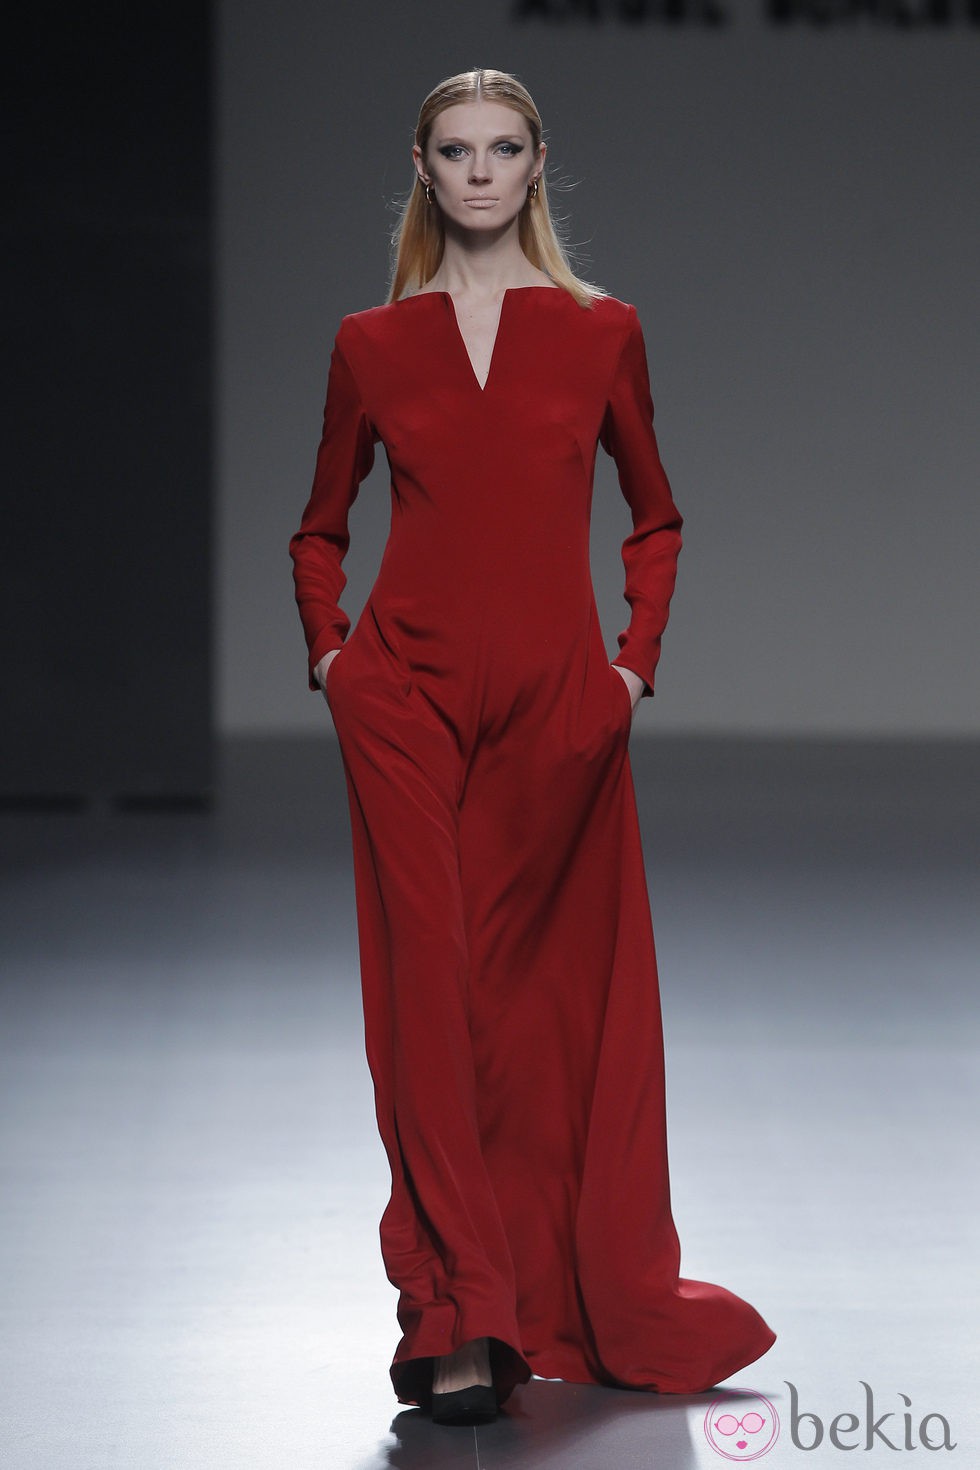 Vestido rojo largo de la colección otoño/invierno 2013/2014 de Ángel Schlesser en Madrid Fashion Week